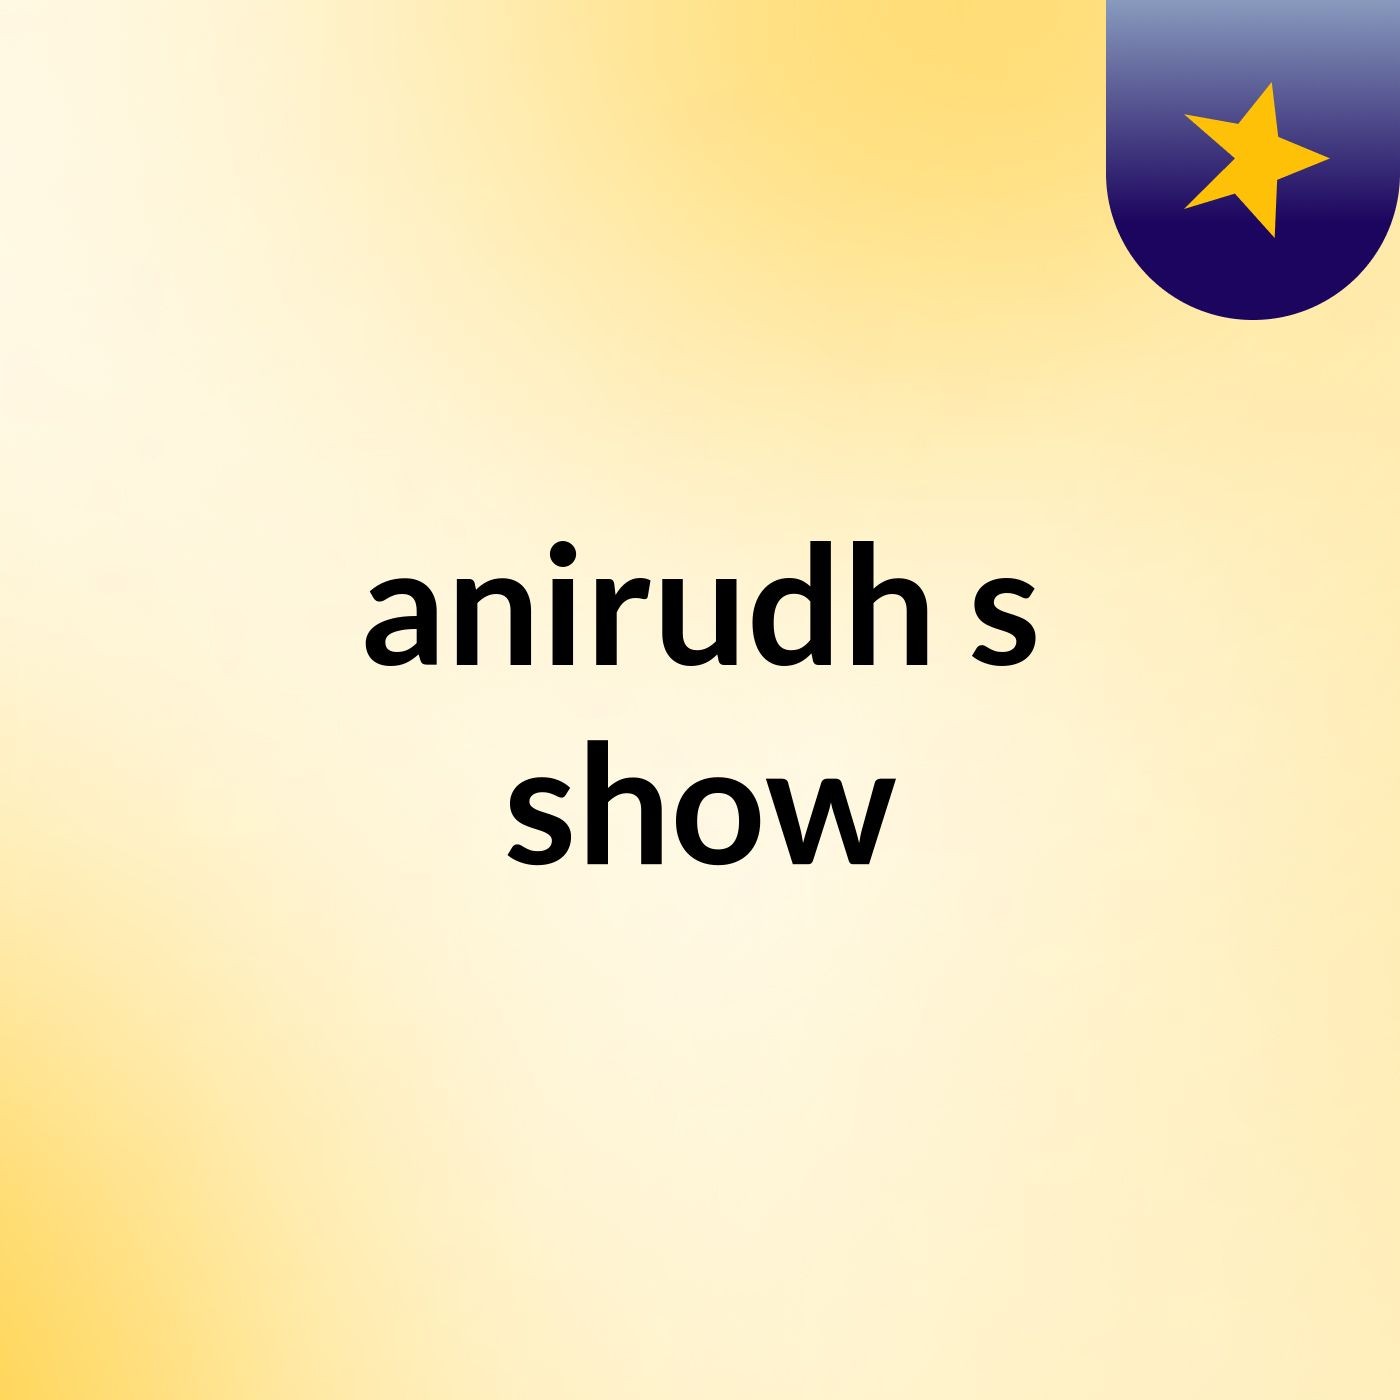 anirudh's show